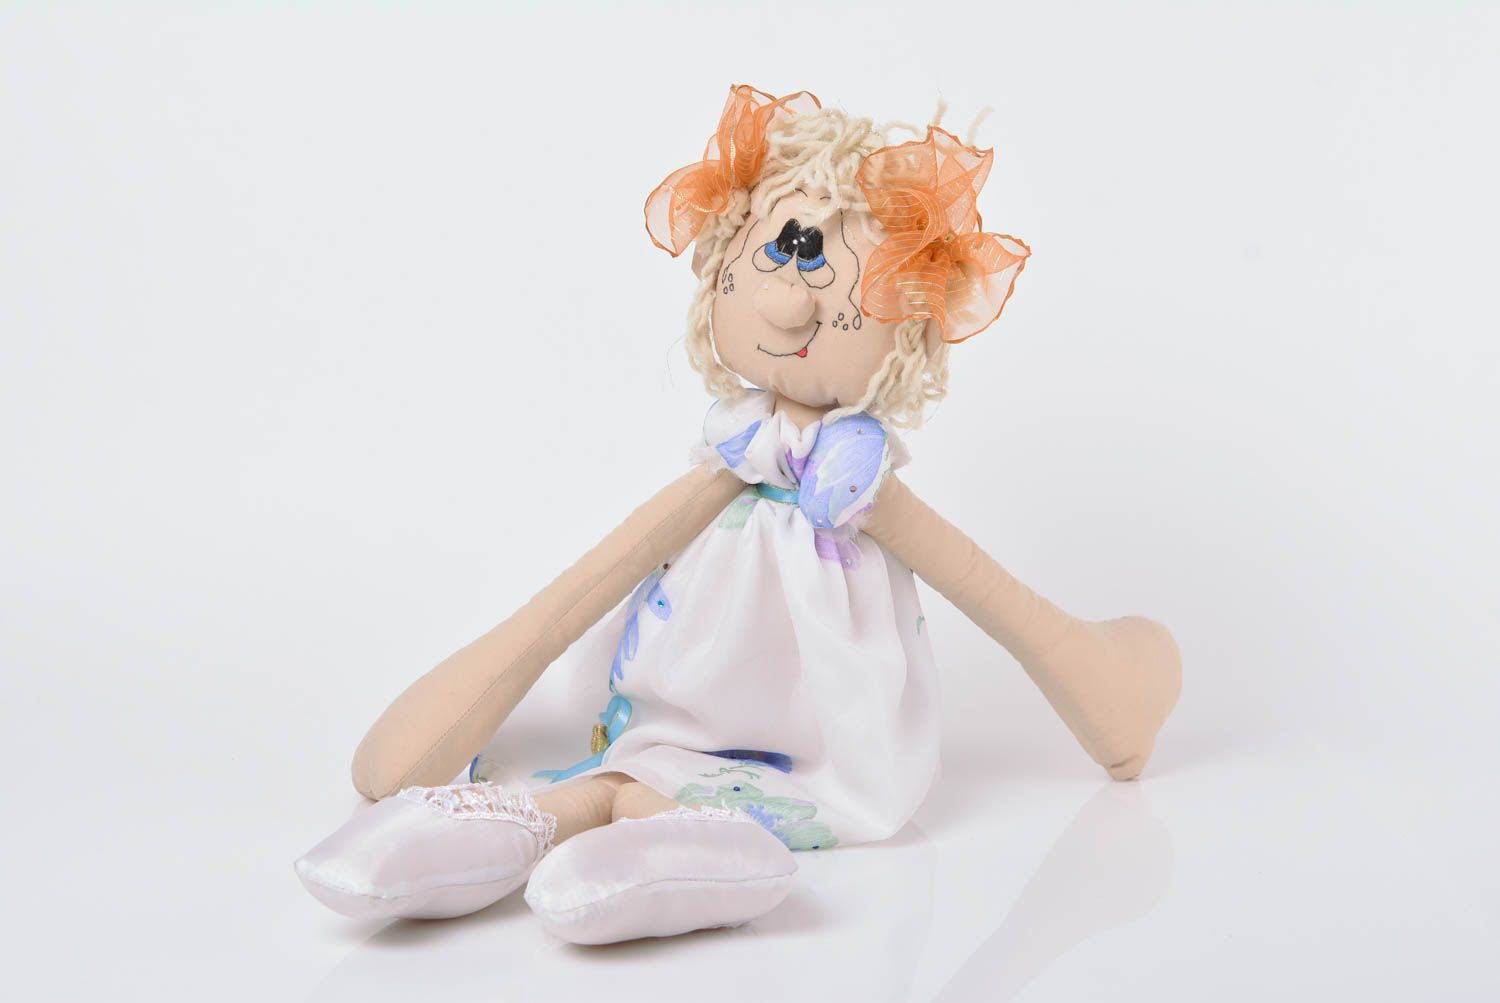 Мягкая кукла ручной работы их хлопка оригинальная красивая для девочки фото 1